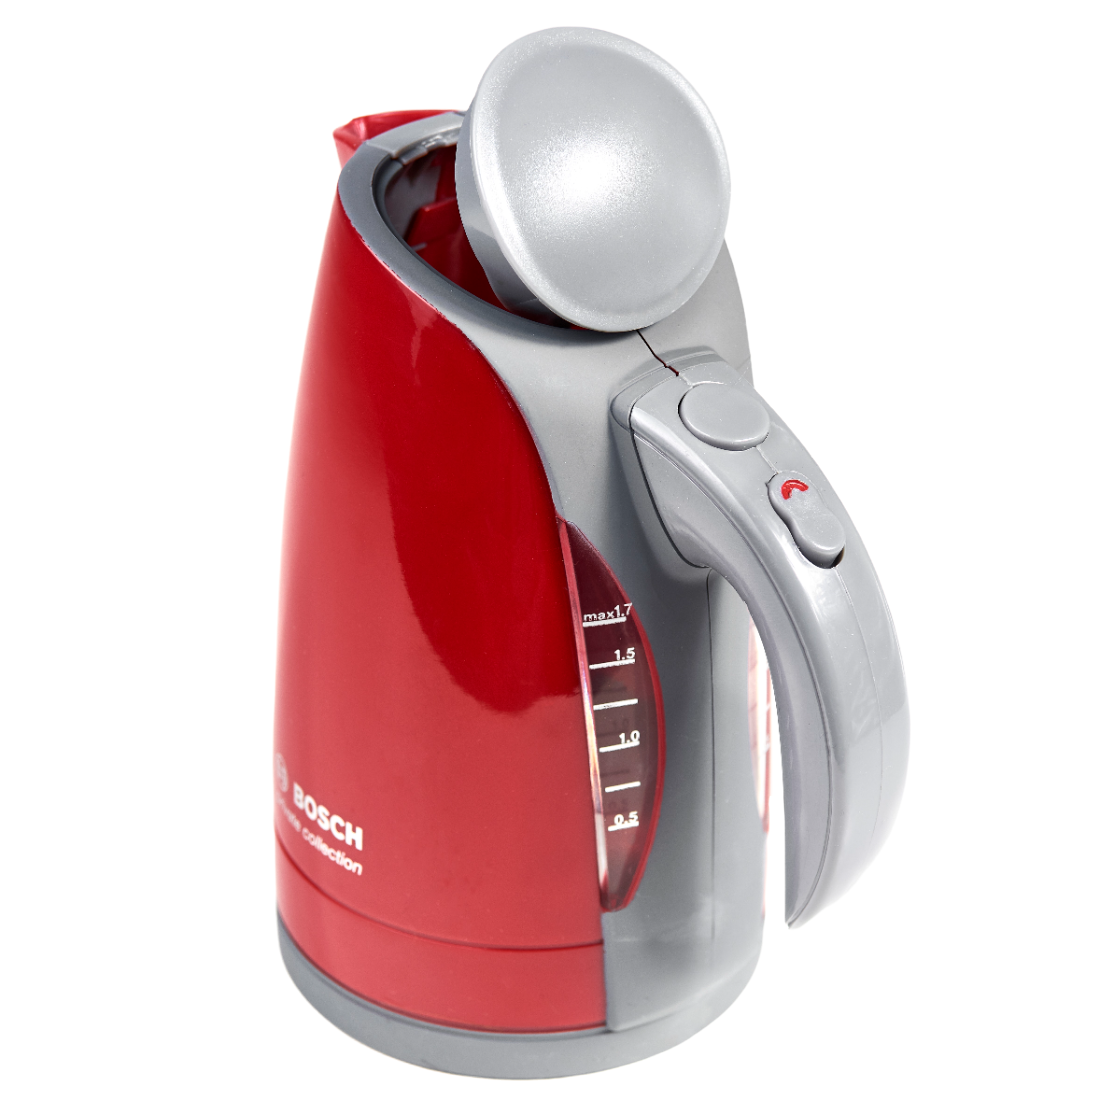 Іграшковий набір Bosch Mini Чайник, червоний з сірим (9548) - фото 1